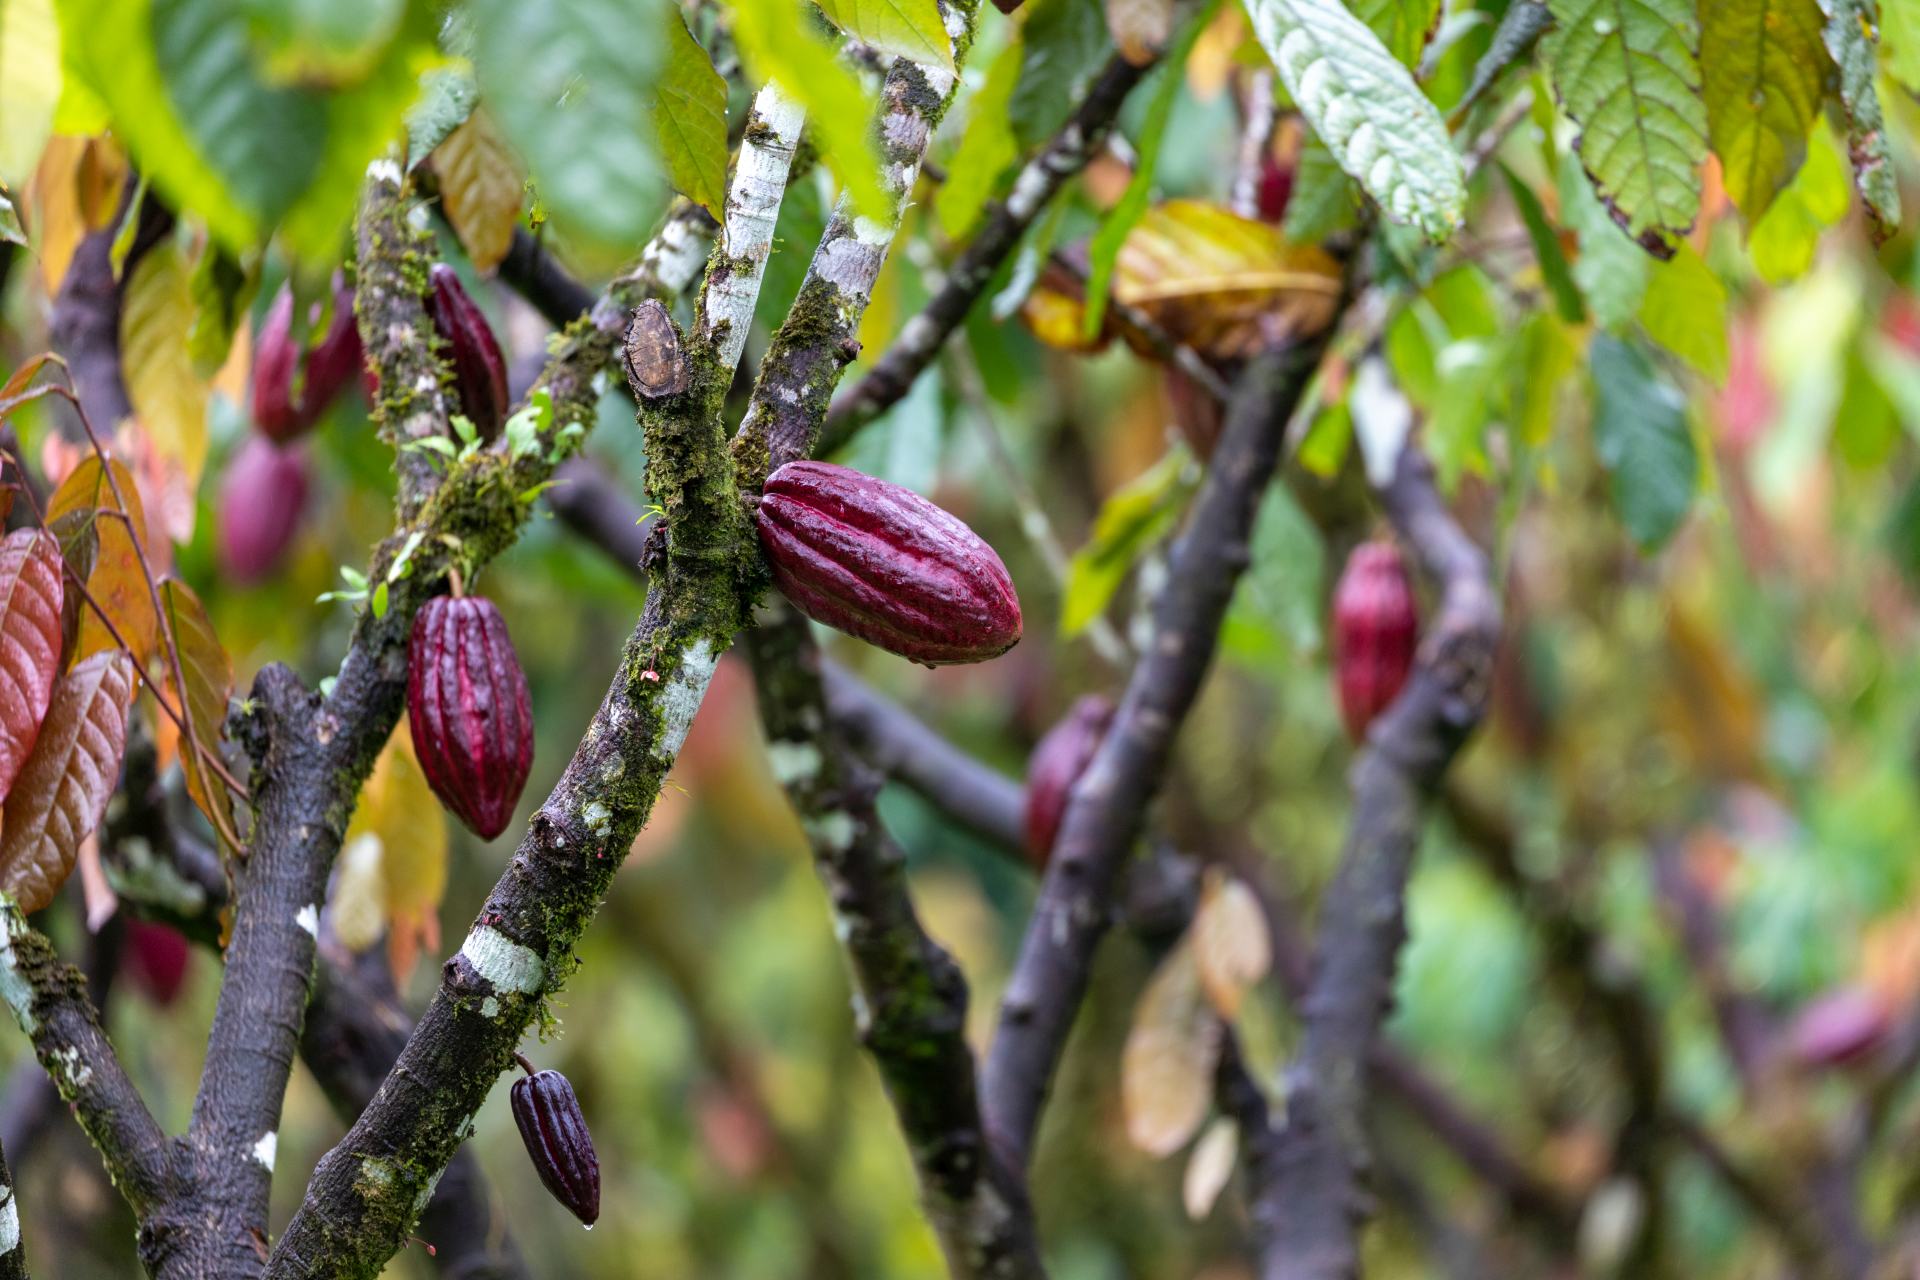  Svět burzy potraviny komodity kakao ceny 